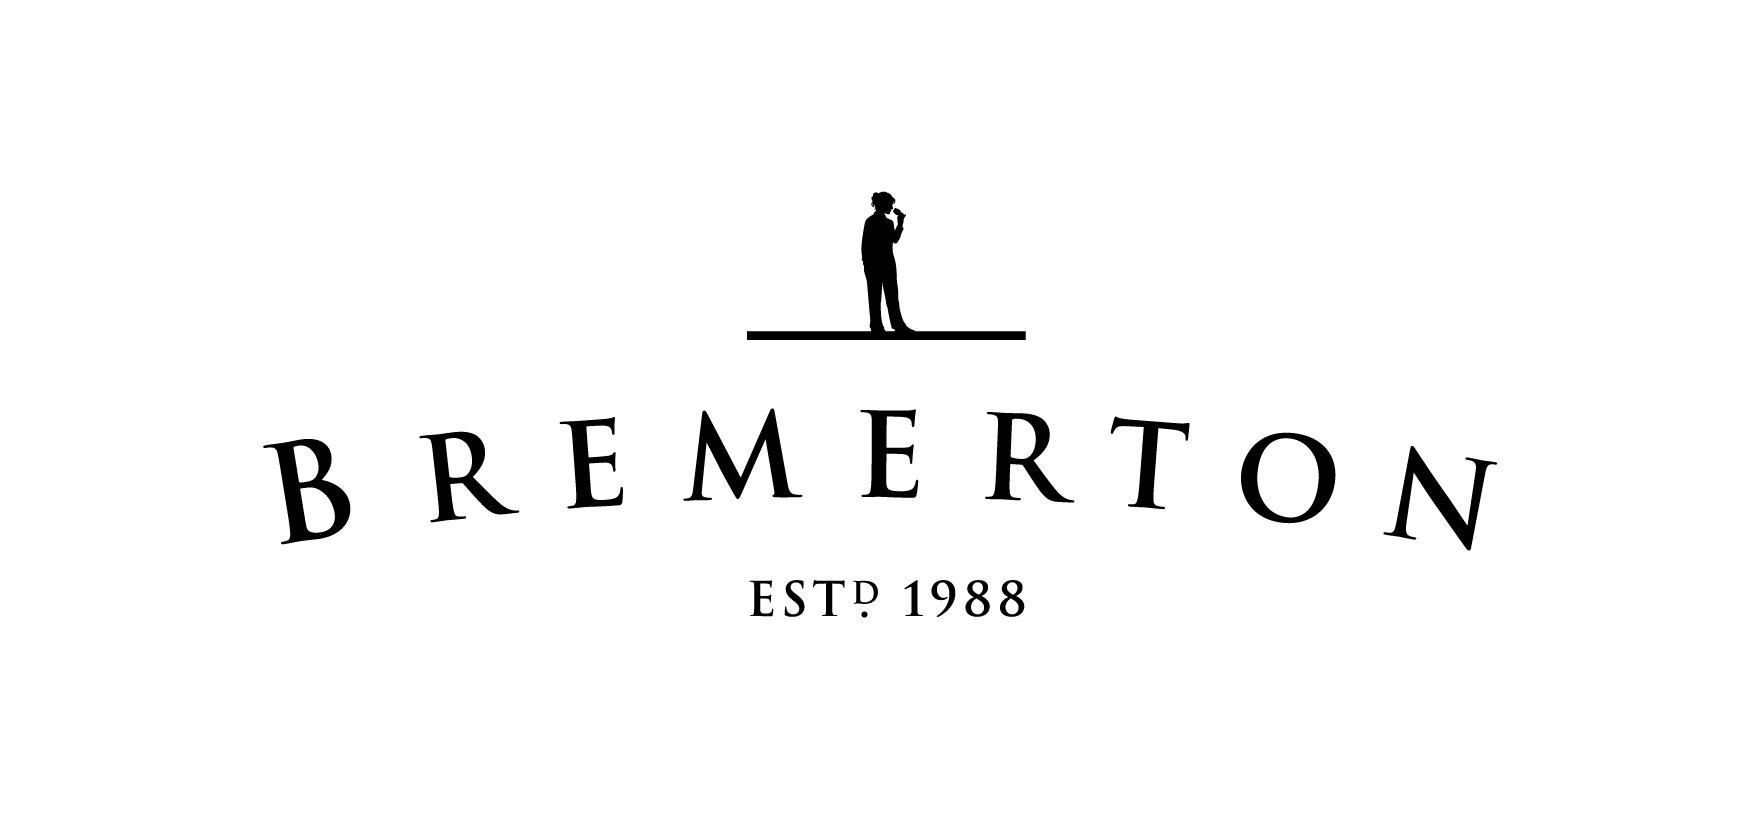 布雷默顿酒庄Bremerton Wines